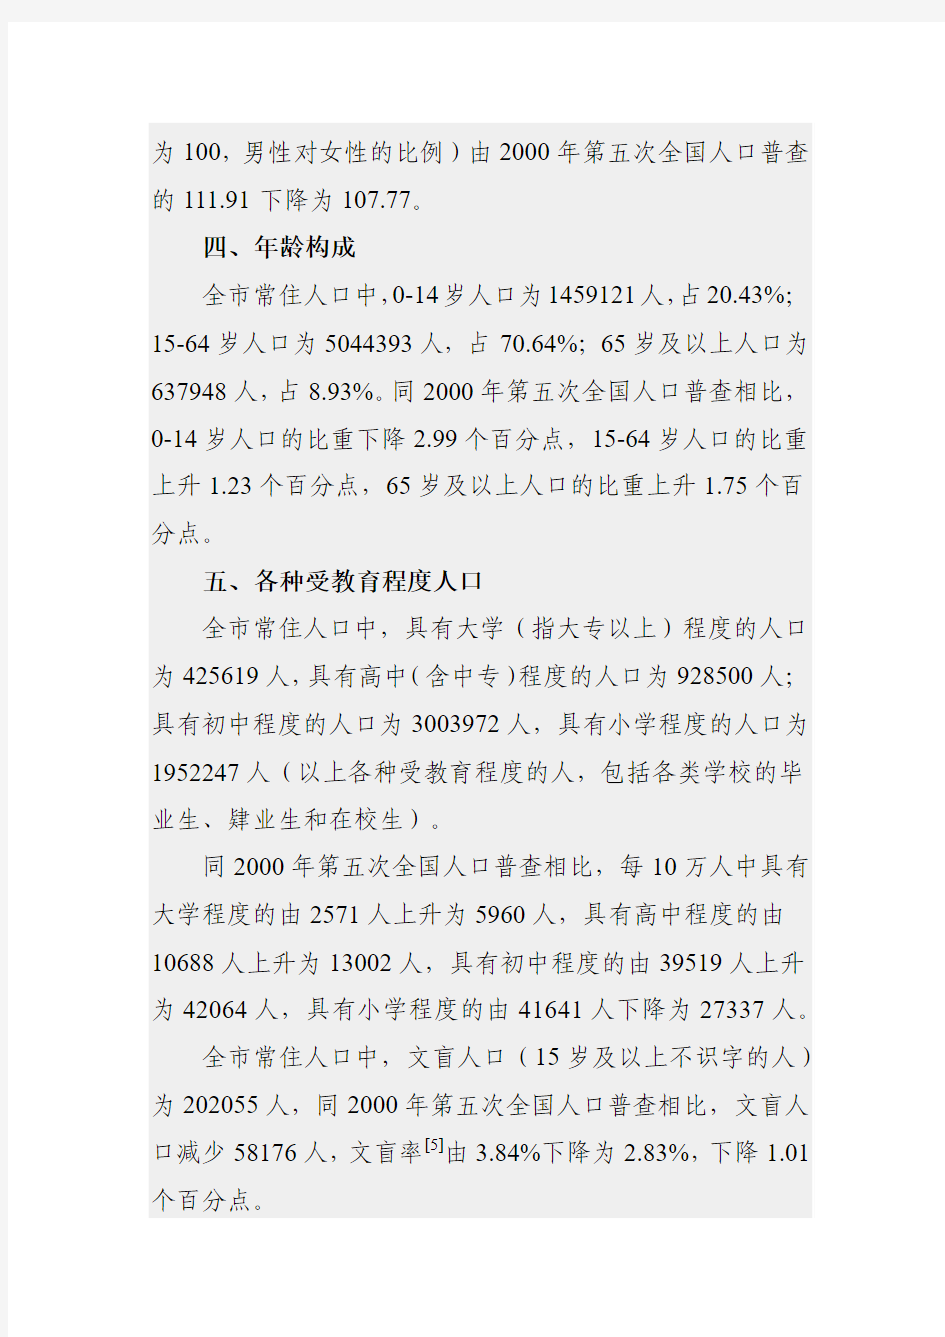 衡阳市第六次全国人口普查主要数据公报